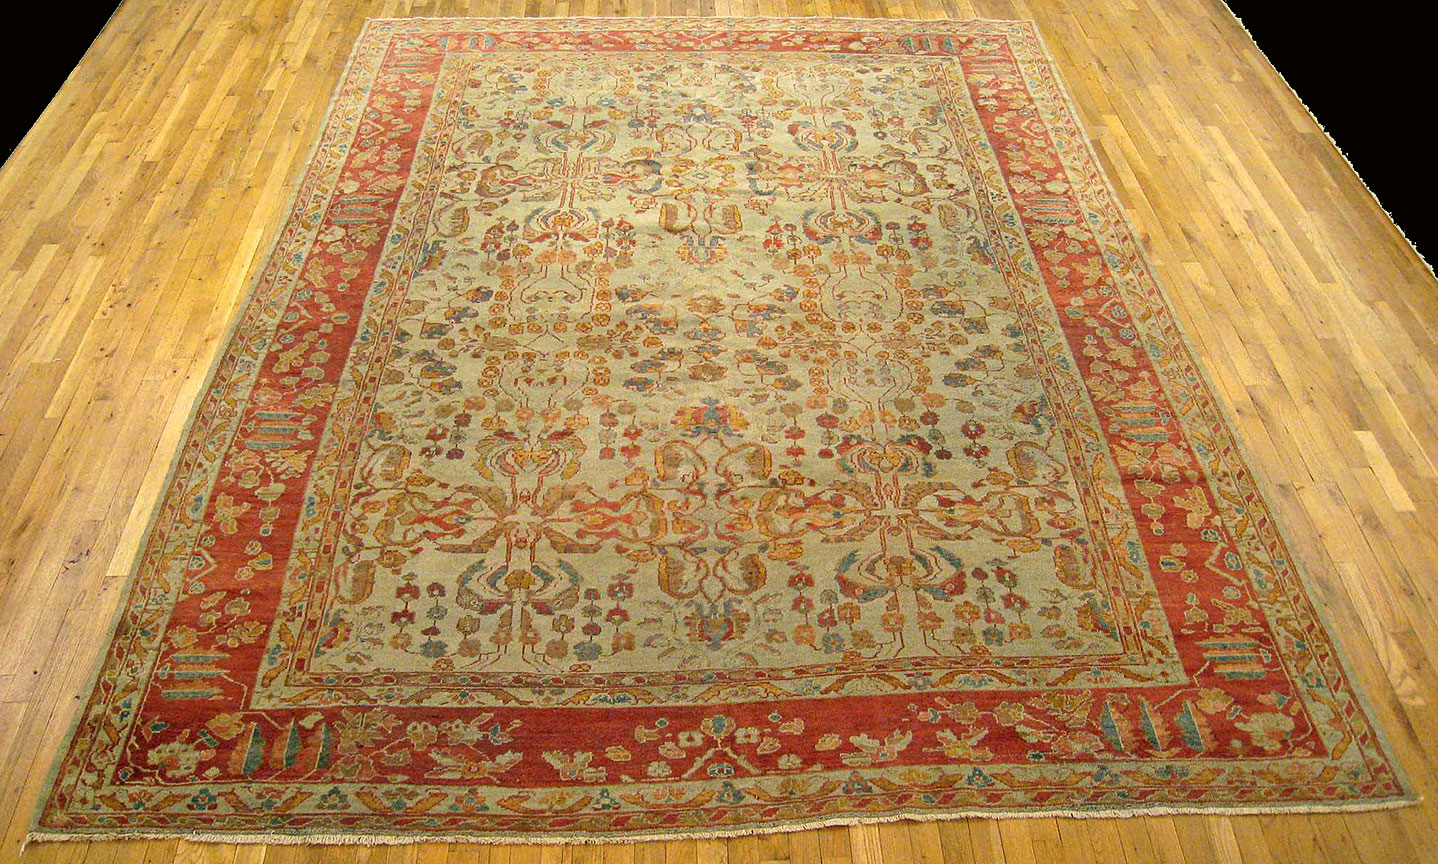 Antique sultan abad Carpet - # 9873